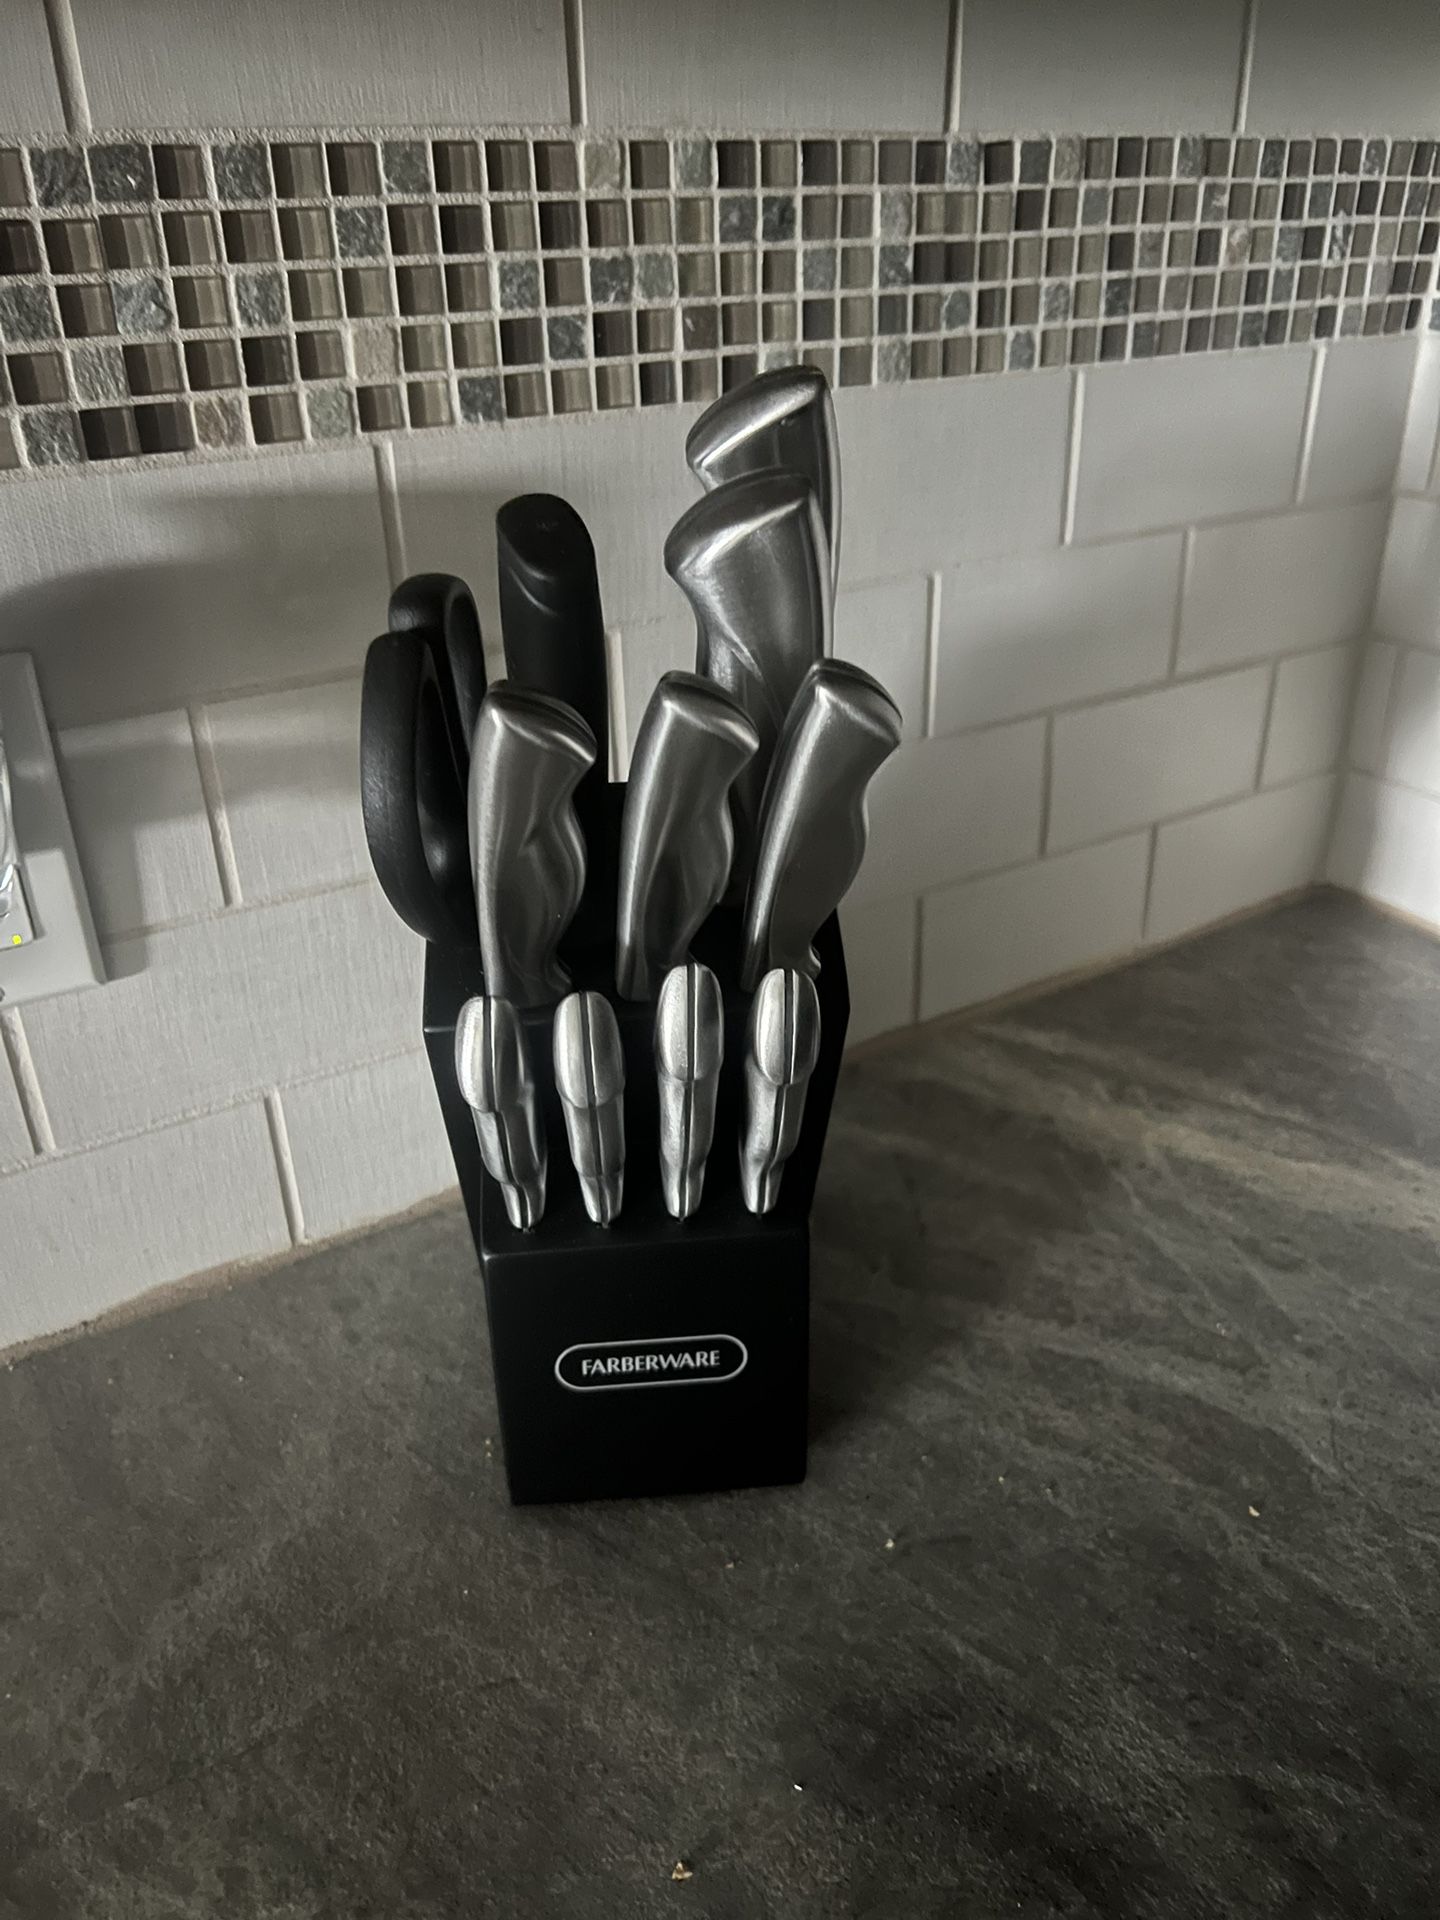 Set Of kitchen knives